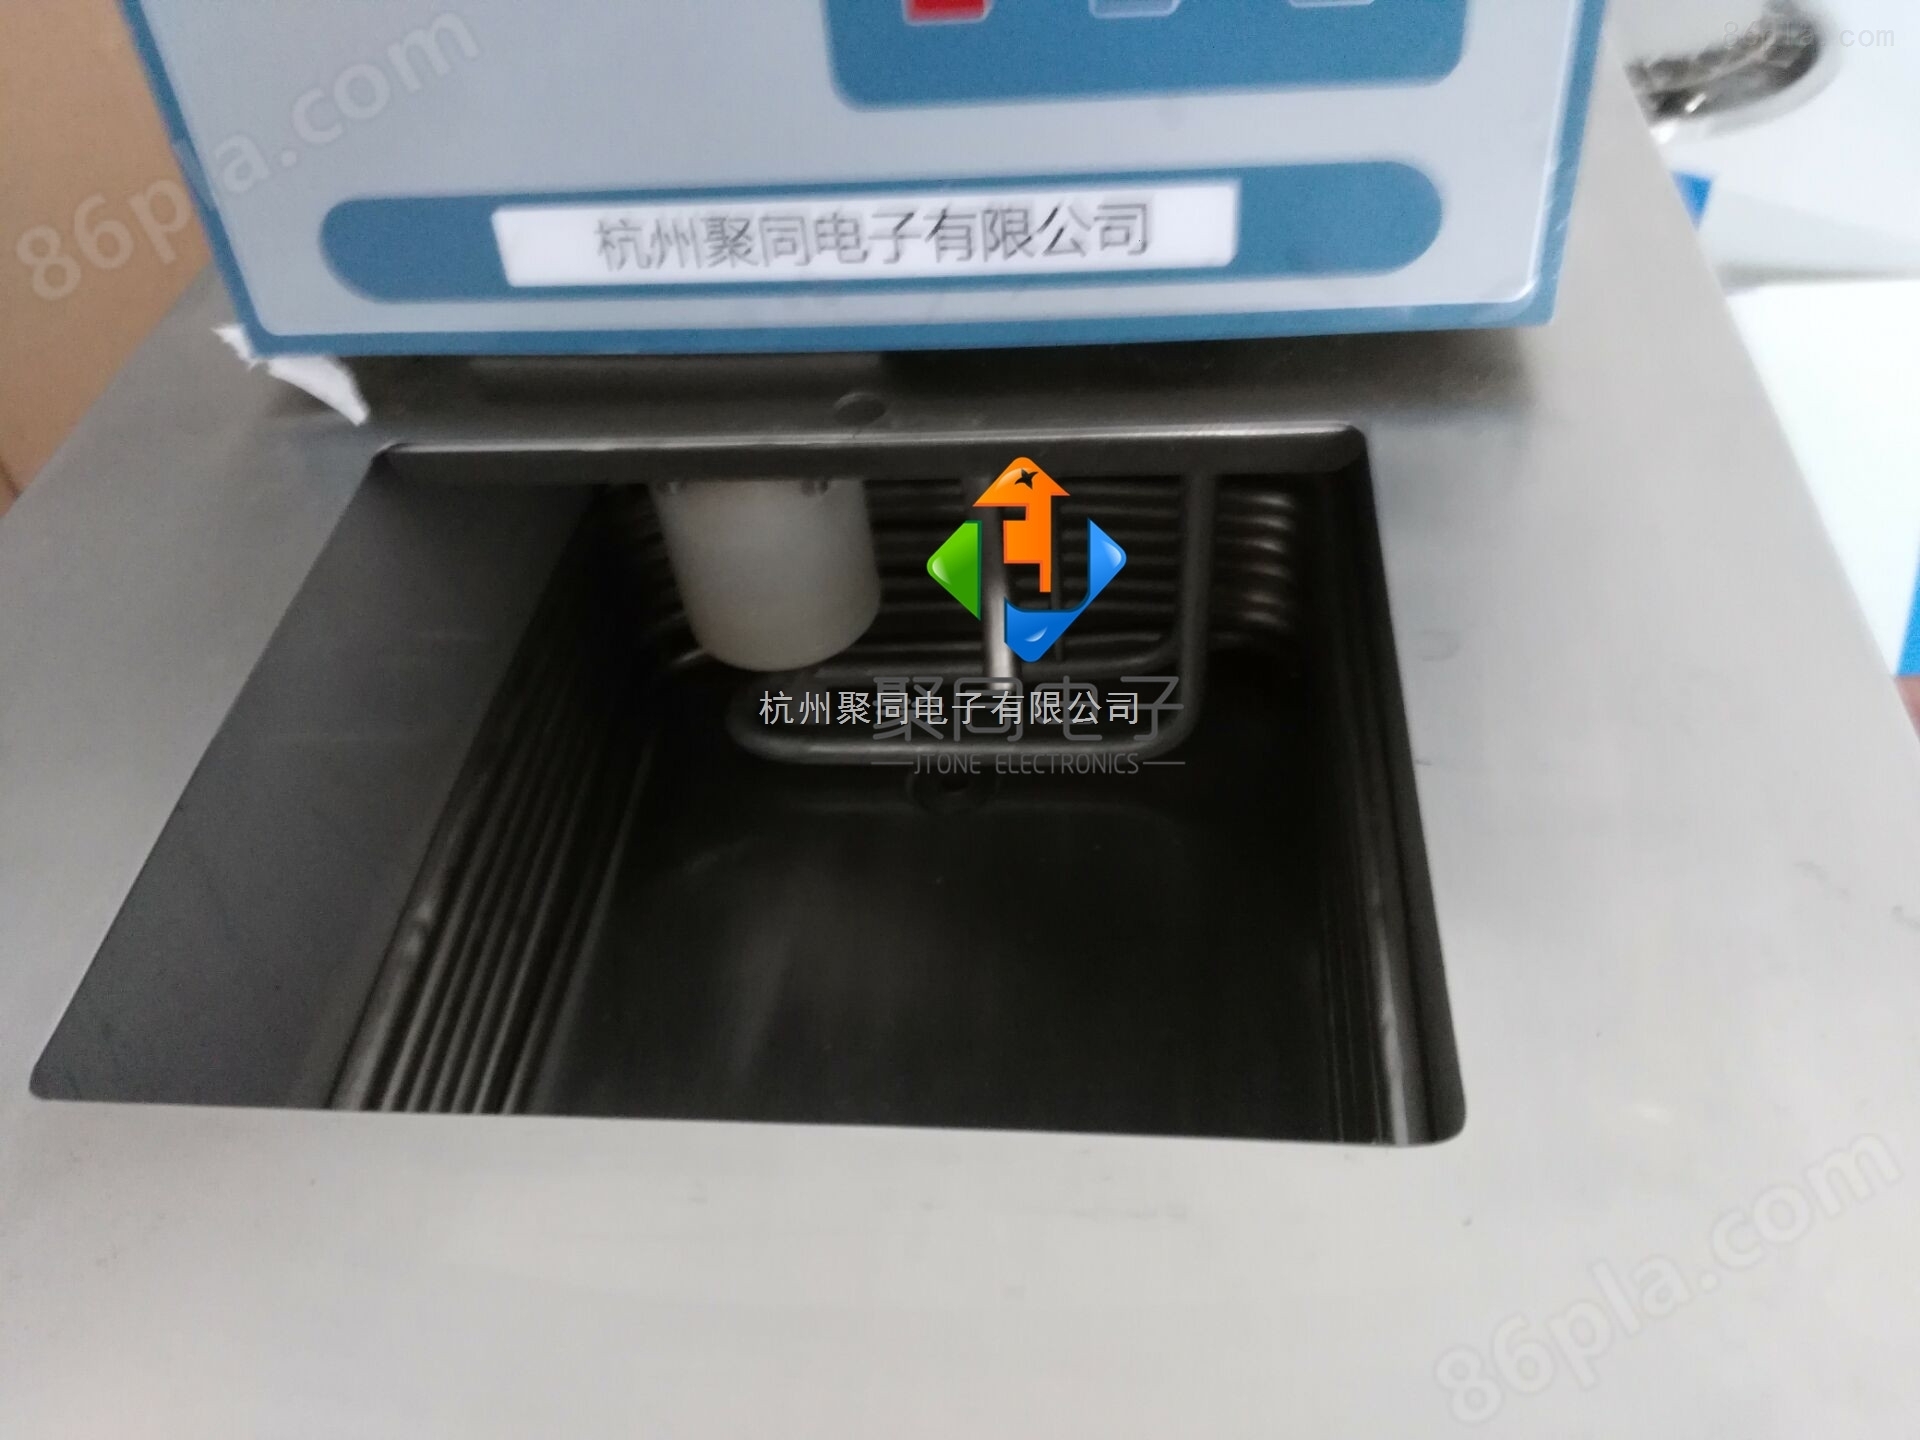 上海聚同厂家磁力搅拌低温恒温槽JTONE-40-05L、原装现货